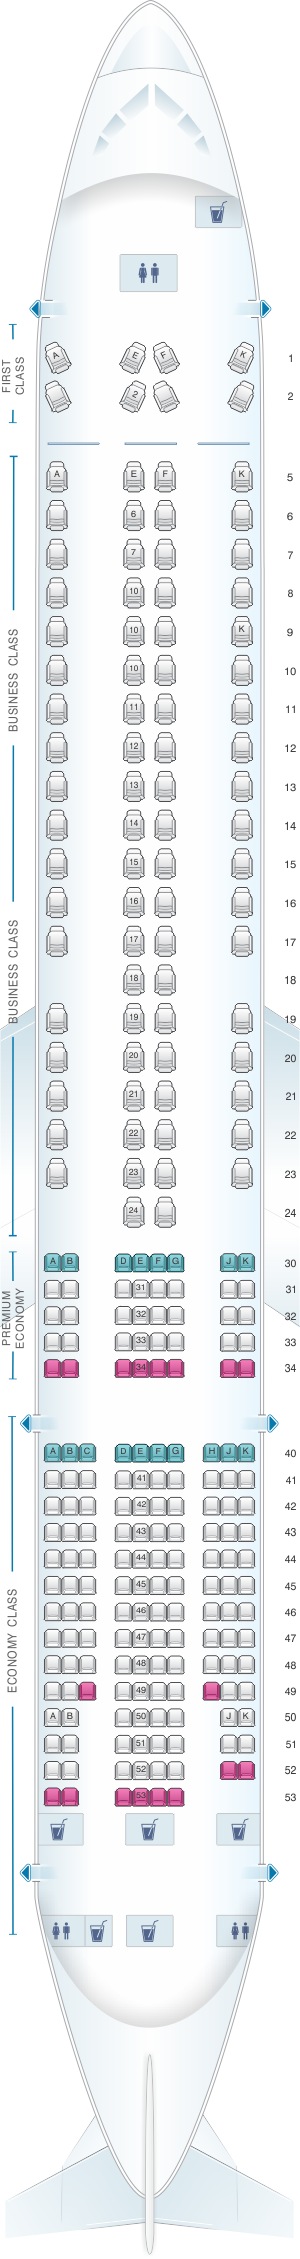 British Airways 777 Seat Map